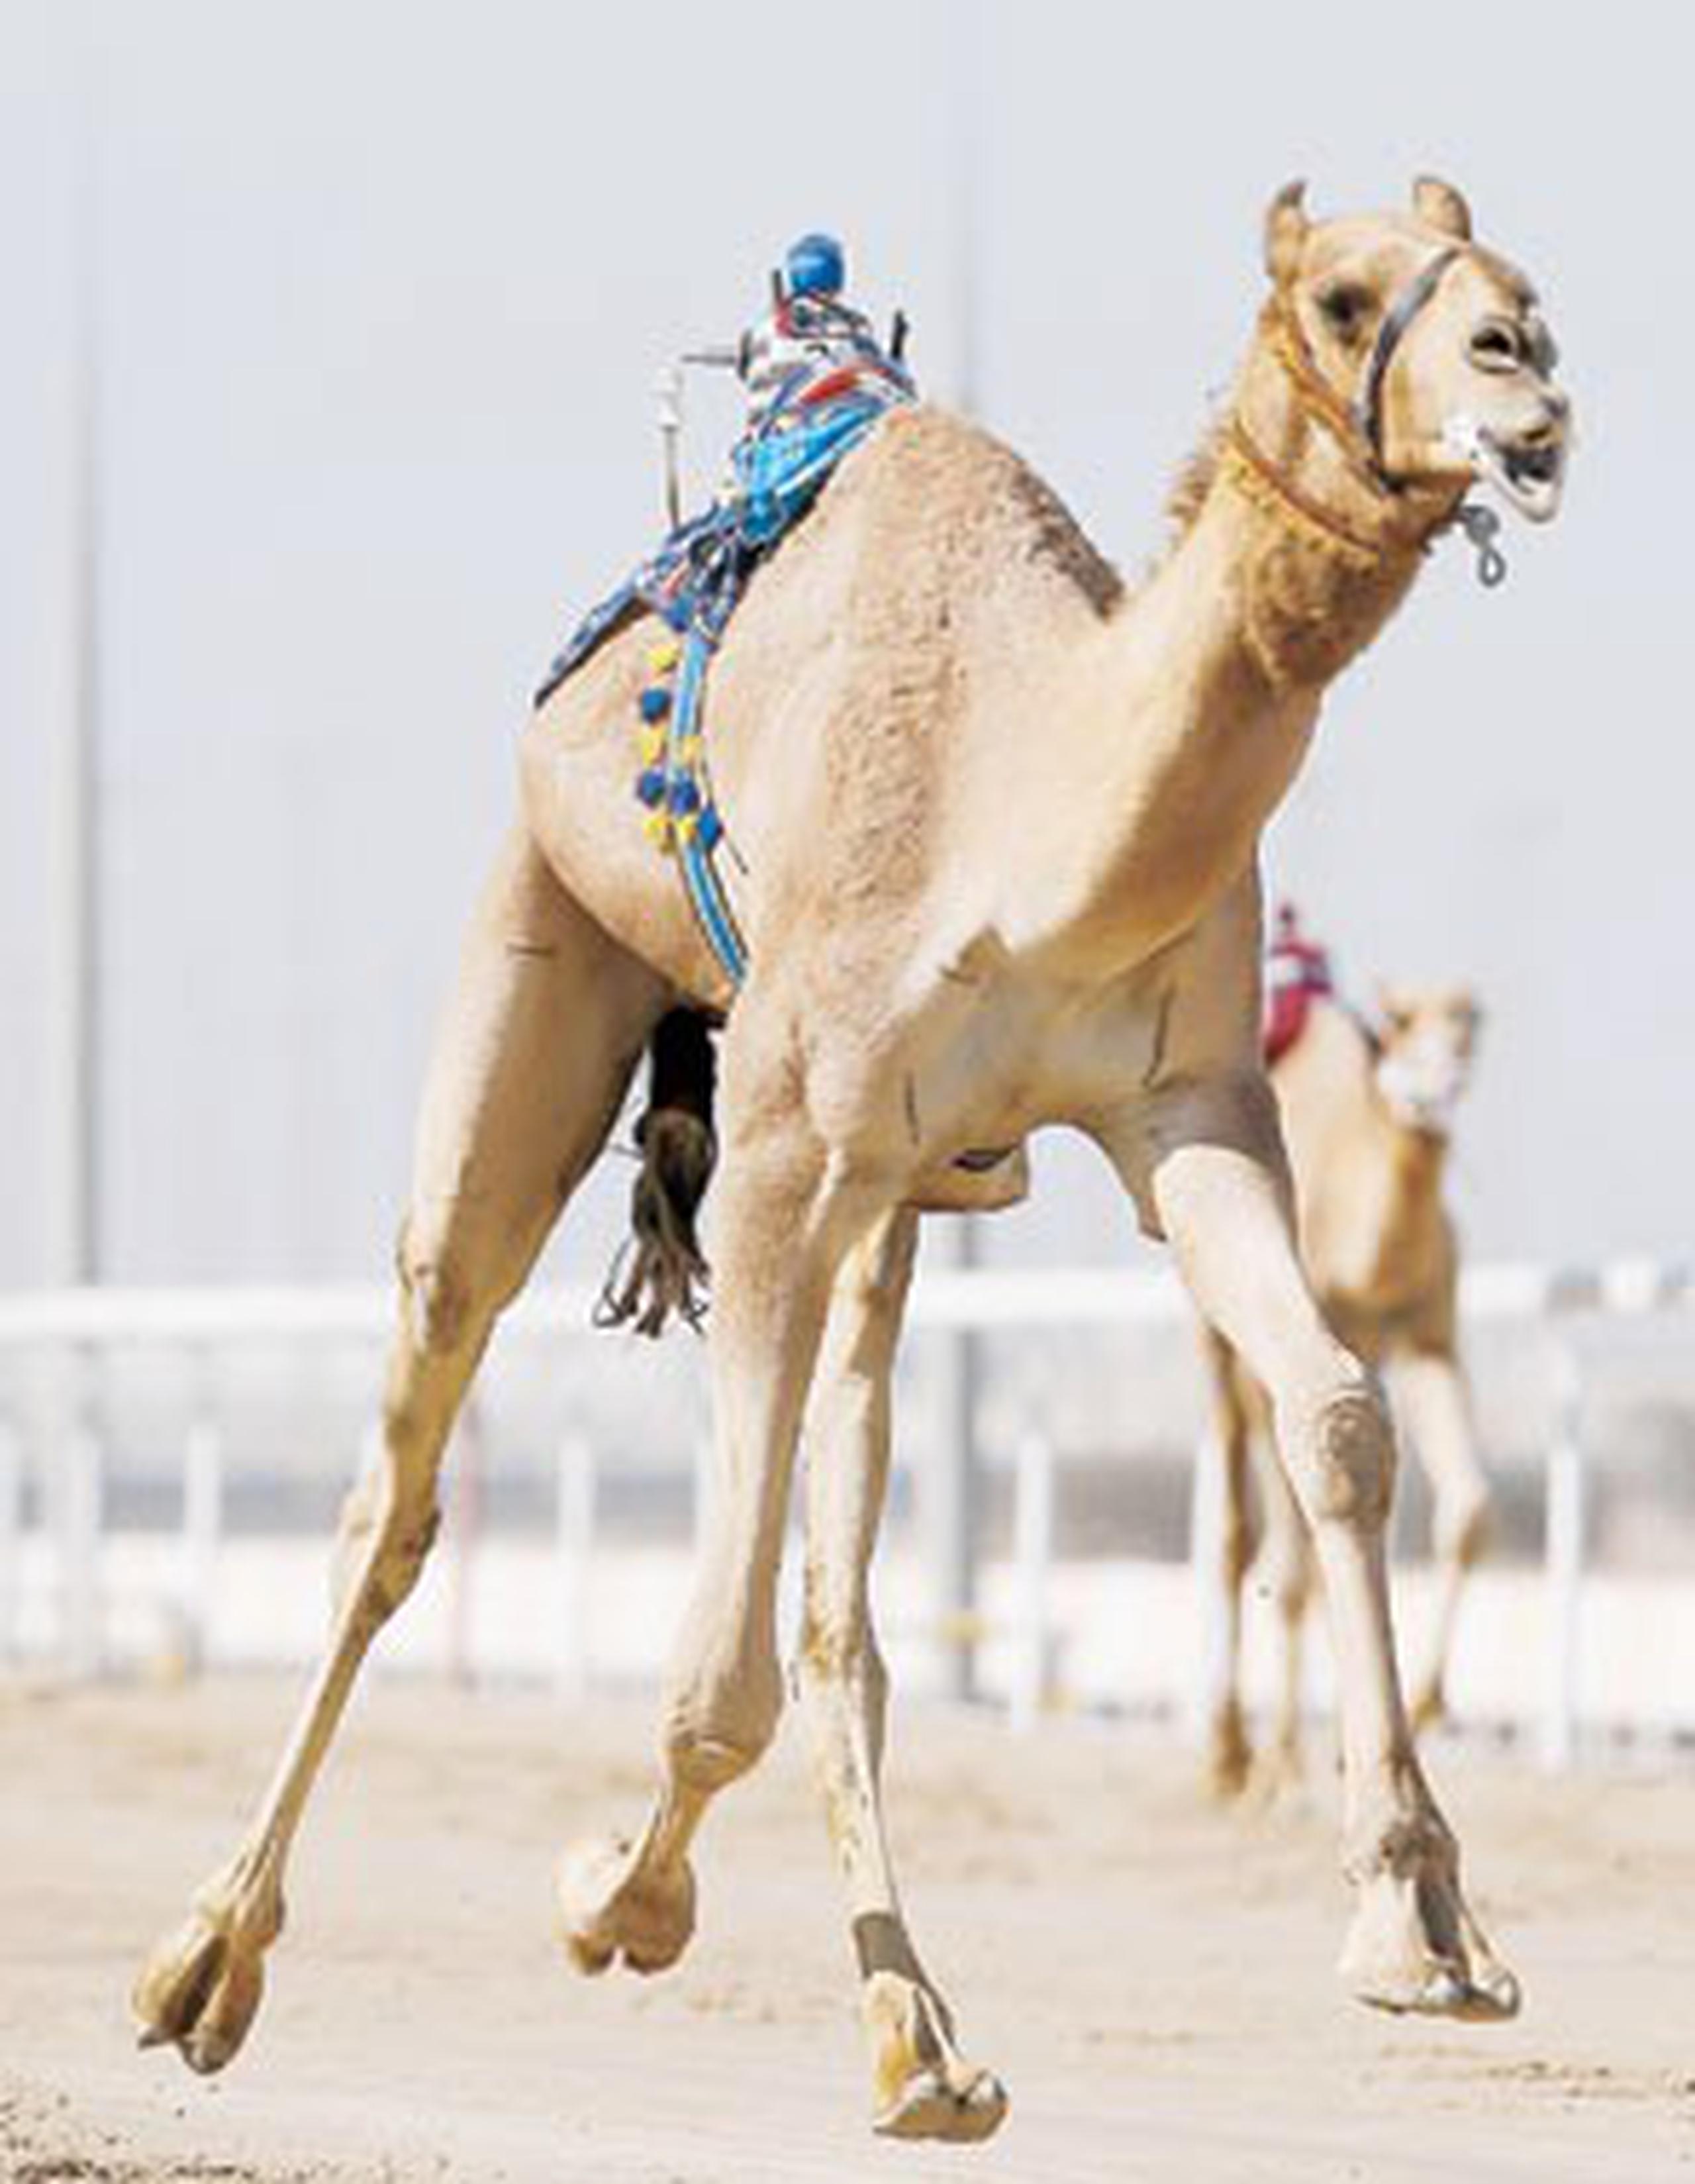 El camello pesaba 700 kilos. (Archivo)